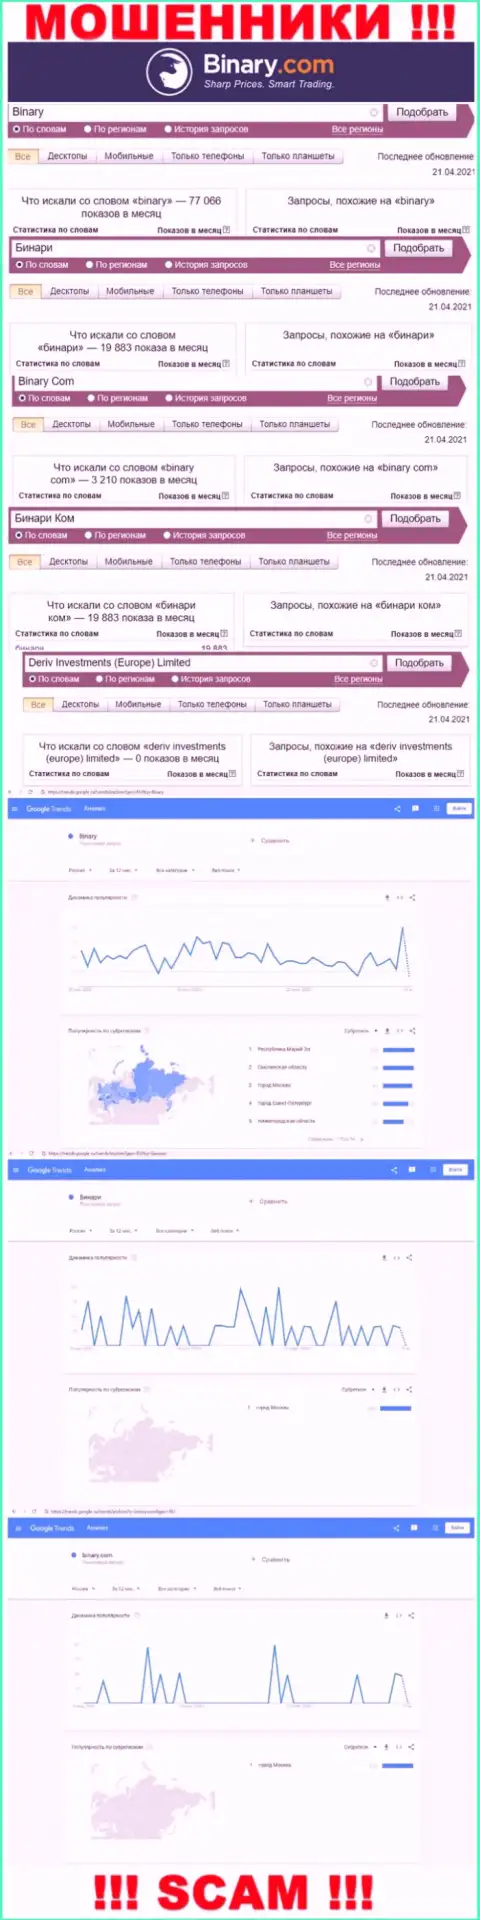 Количество online-запросов информации о мошенниках Бинари Ком во всемирной сети интернет